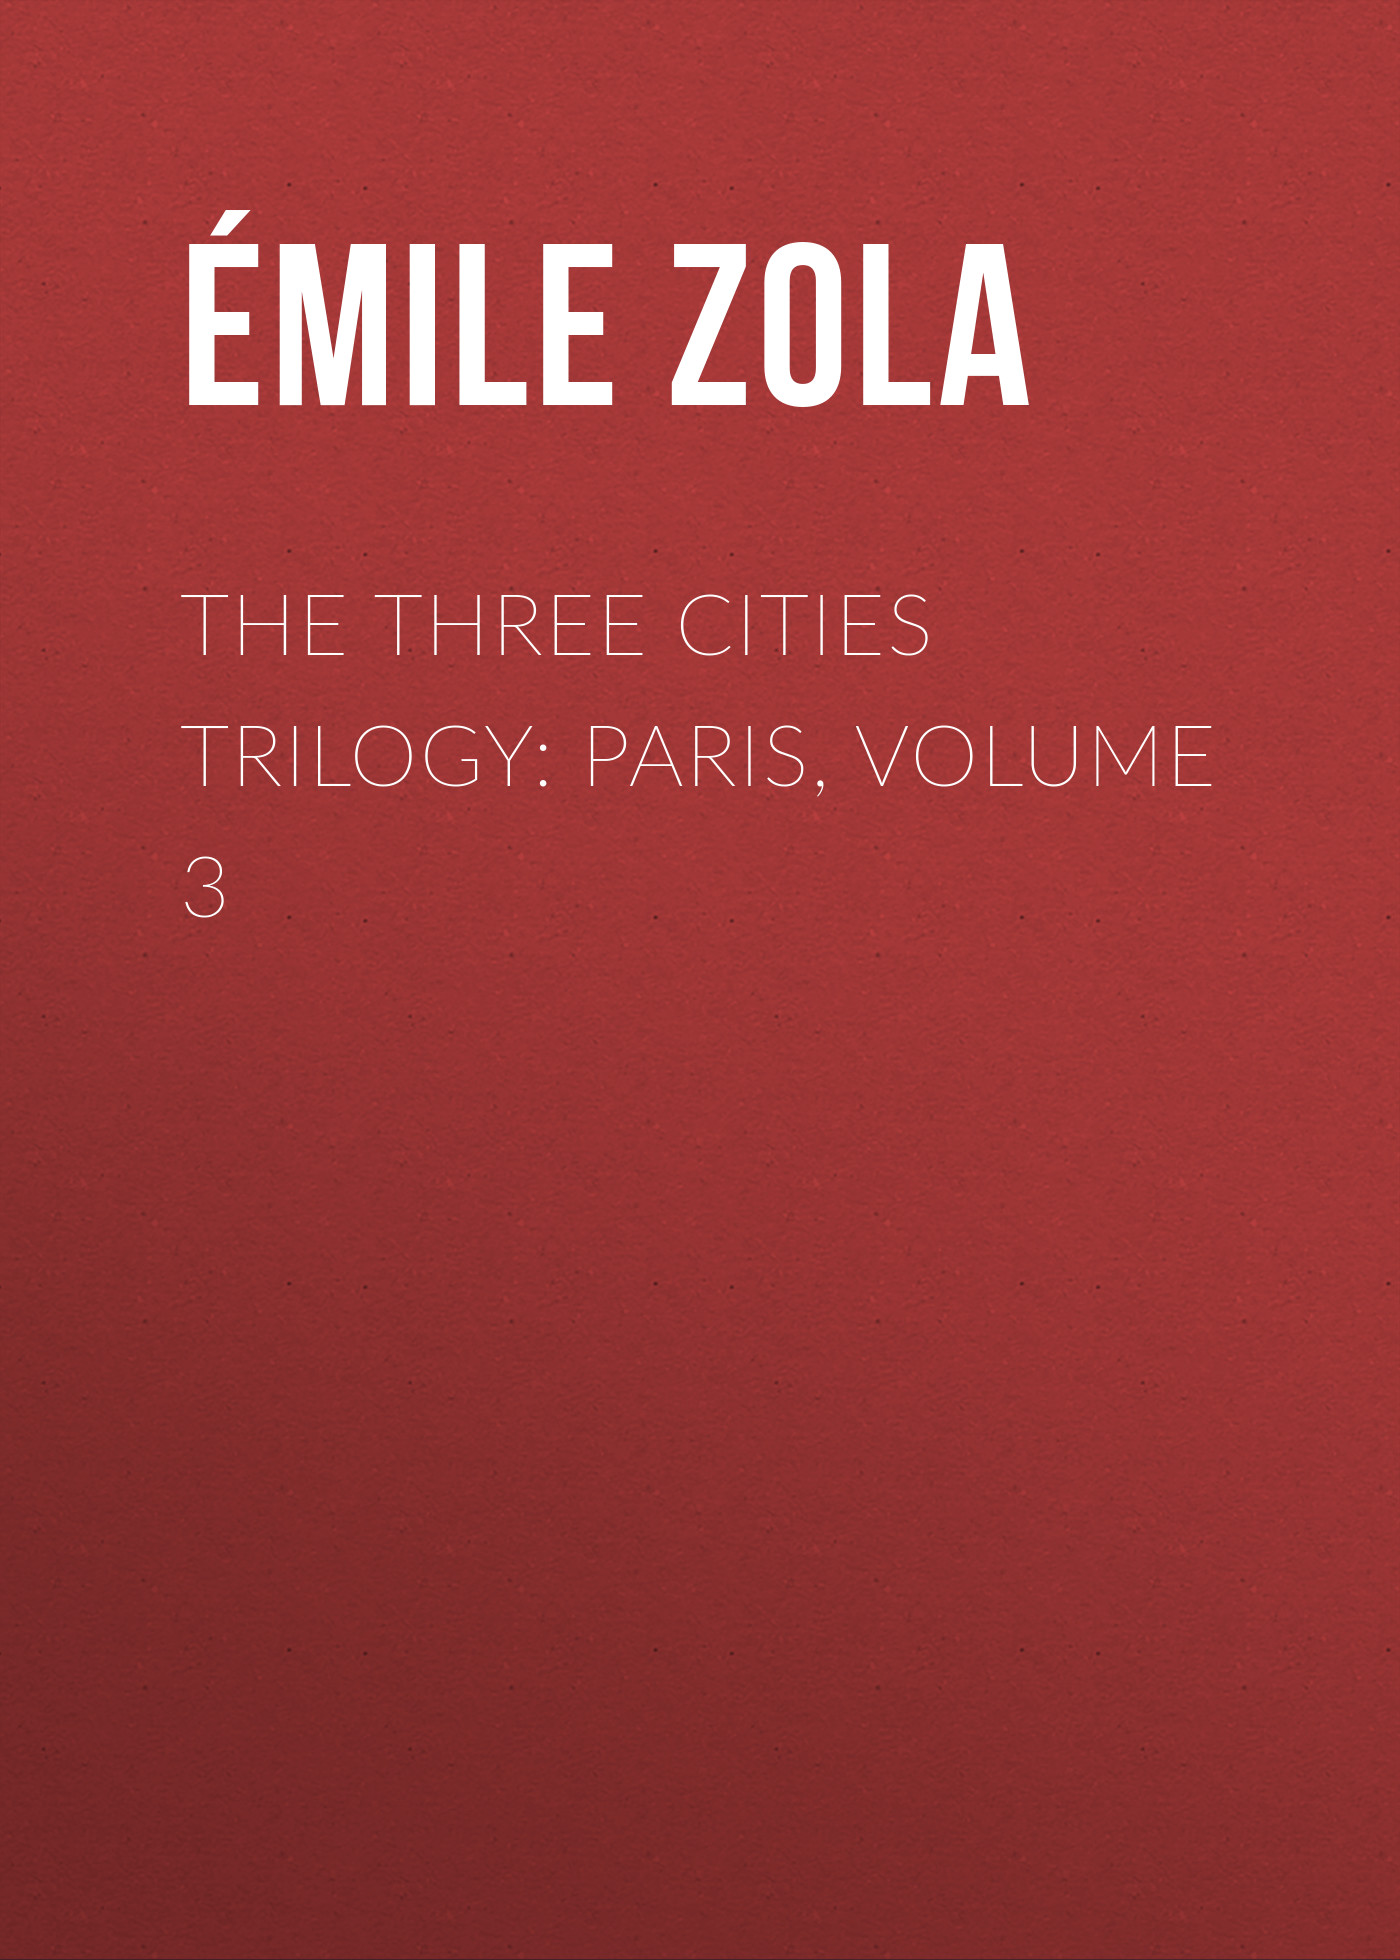 Книга The Three Cities Trilogy: Paris, Volume 3 из серии , созданная Émile Zola, может относится к жанру Литература 19 века, Зарубежная старинная литература, Зарубежная классика. Стоимость электронной книги The Three Cities Trilogy: Paris, Volume 3 с идентификатором 25559596 составляет 0 руб.